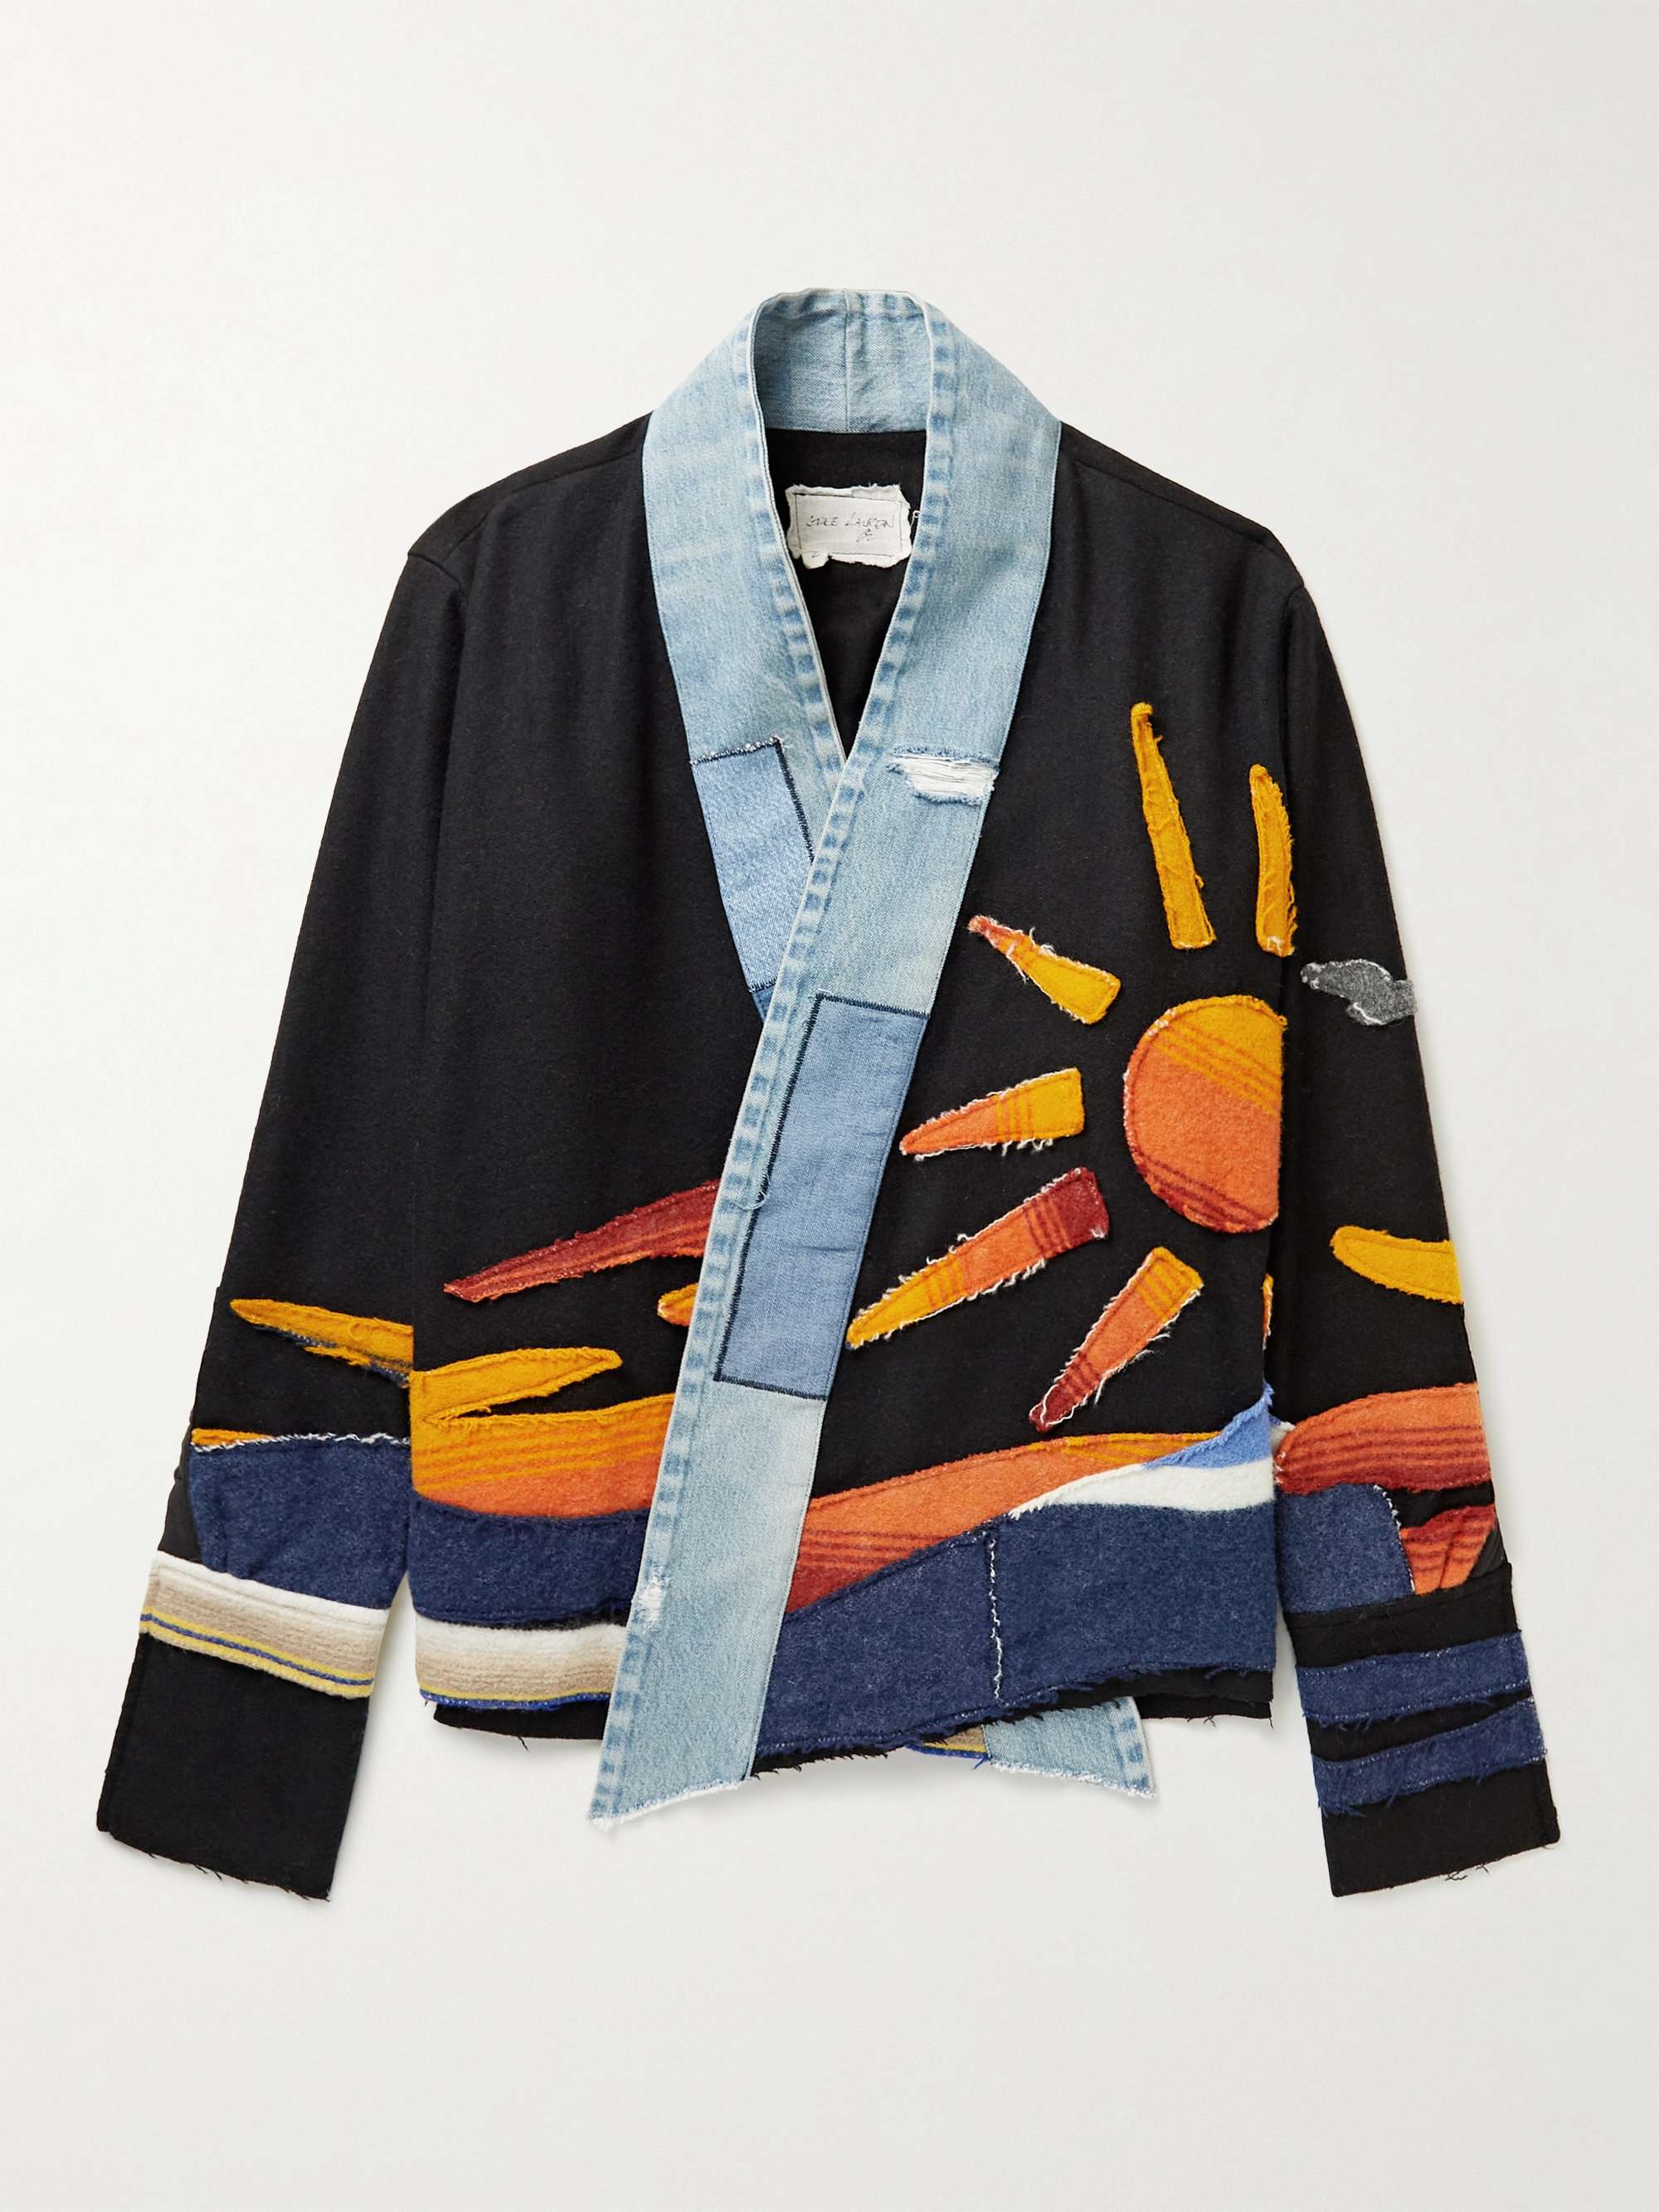 GREG LAUREN Sunrise Distressed Denim-Trimmed Wool and Cotton-Blend Jacket